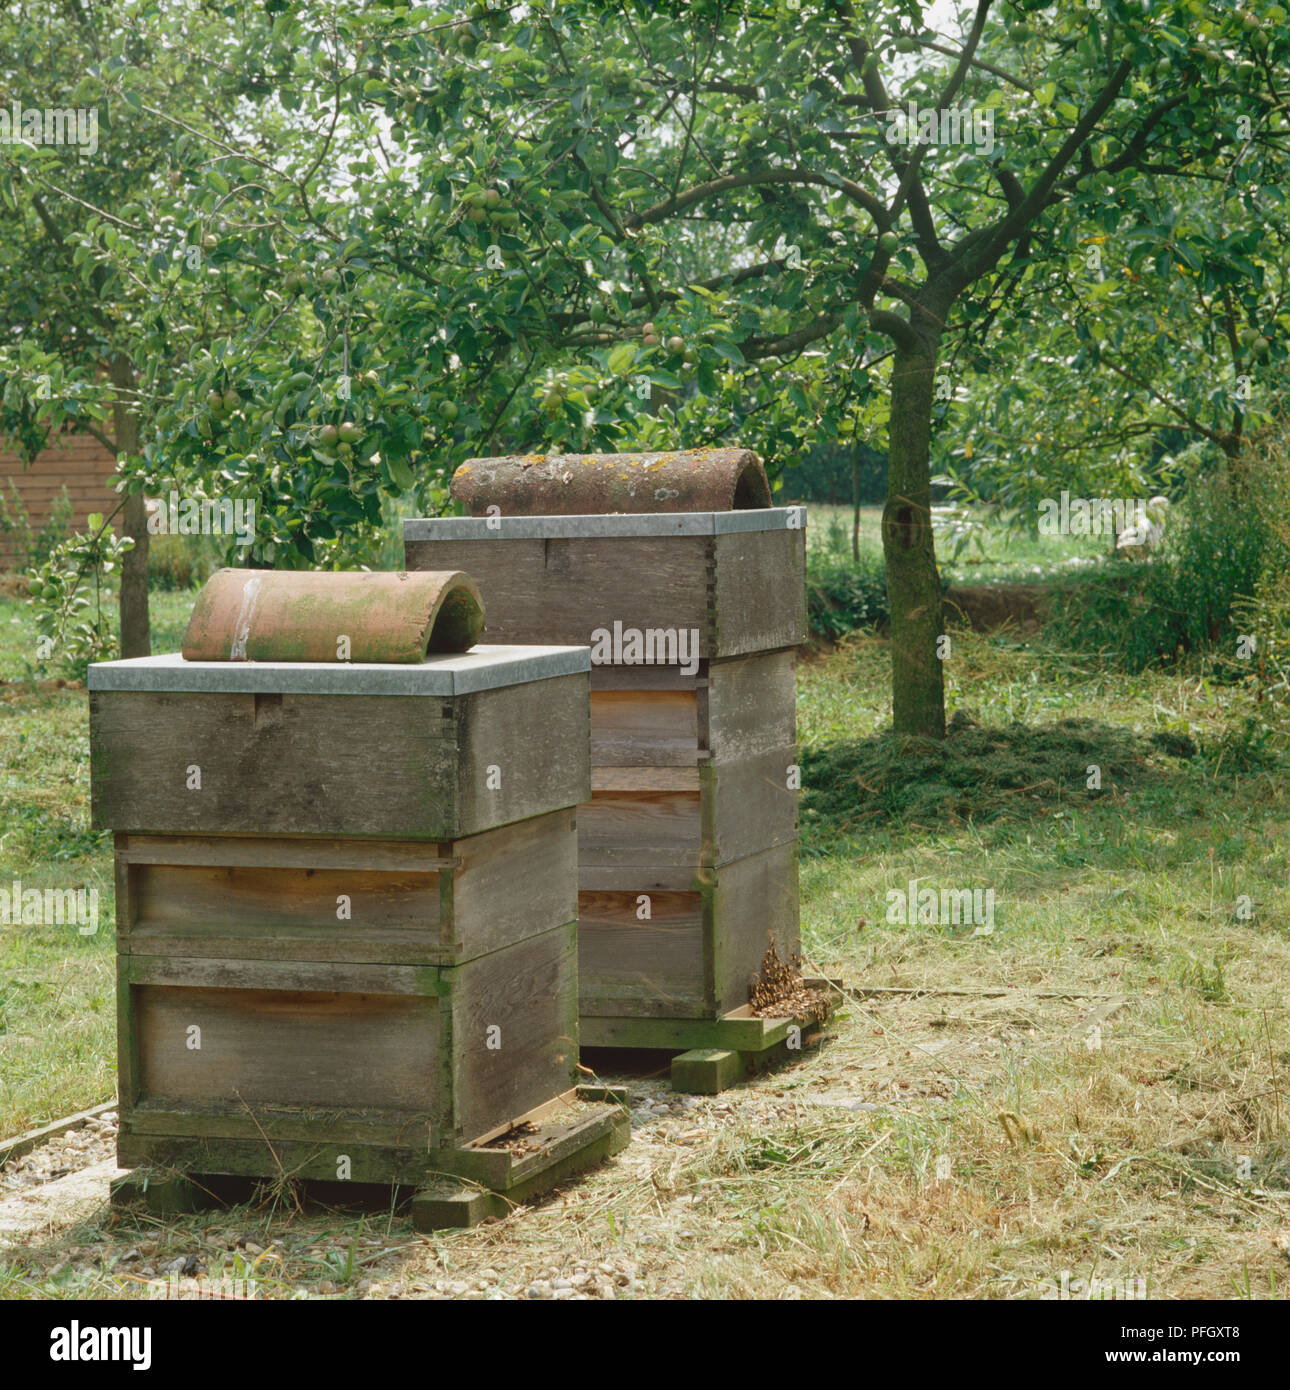 Zwei Holz- Bienenstöcke stehen Seite an Seite in Garten, Bienen schwärmen unten um den Hives, Obst Baum im Hintergrund. Stockfoto